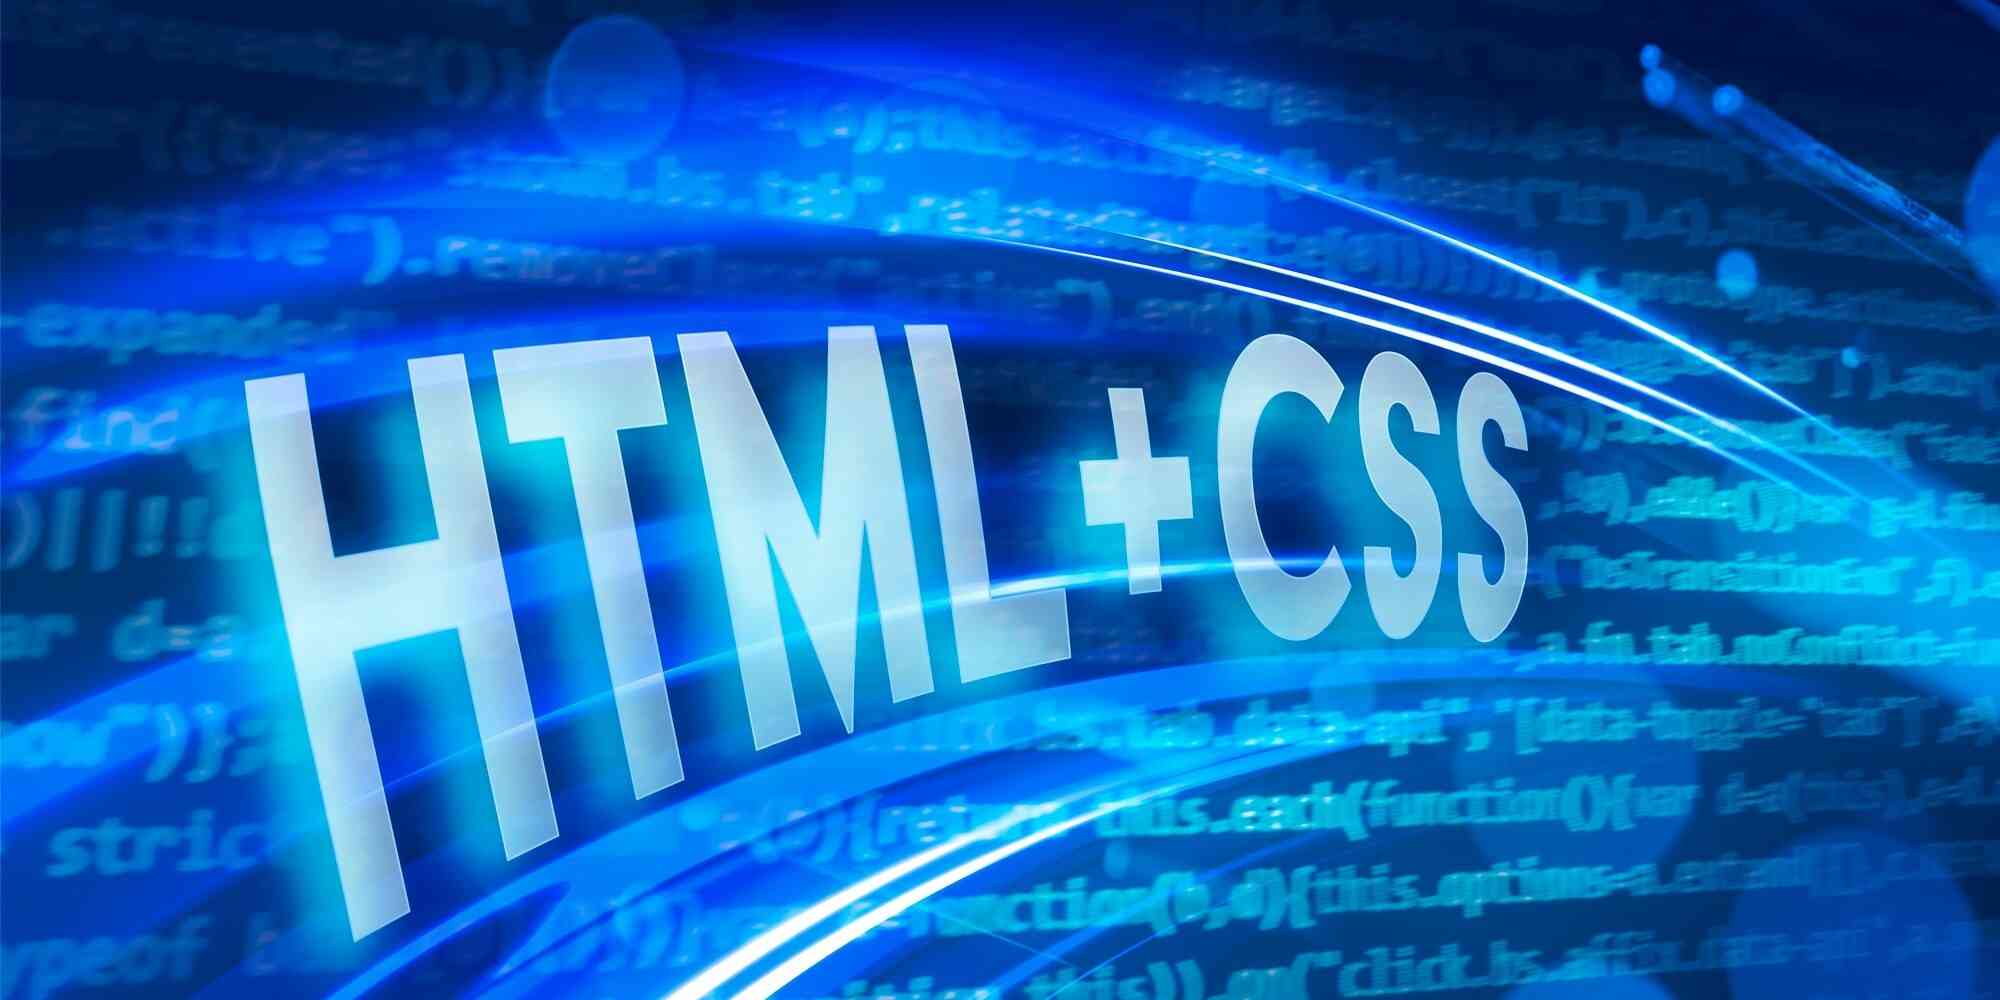 图中包含“HTML+CSS”和“strictin”两个词组。